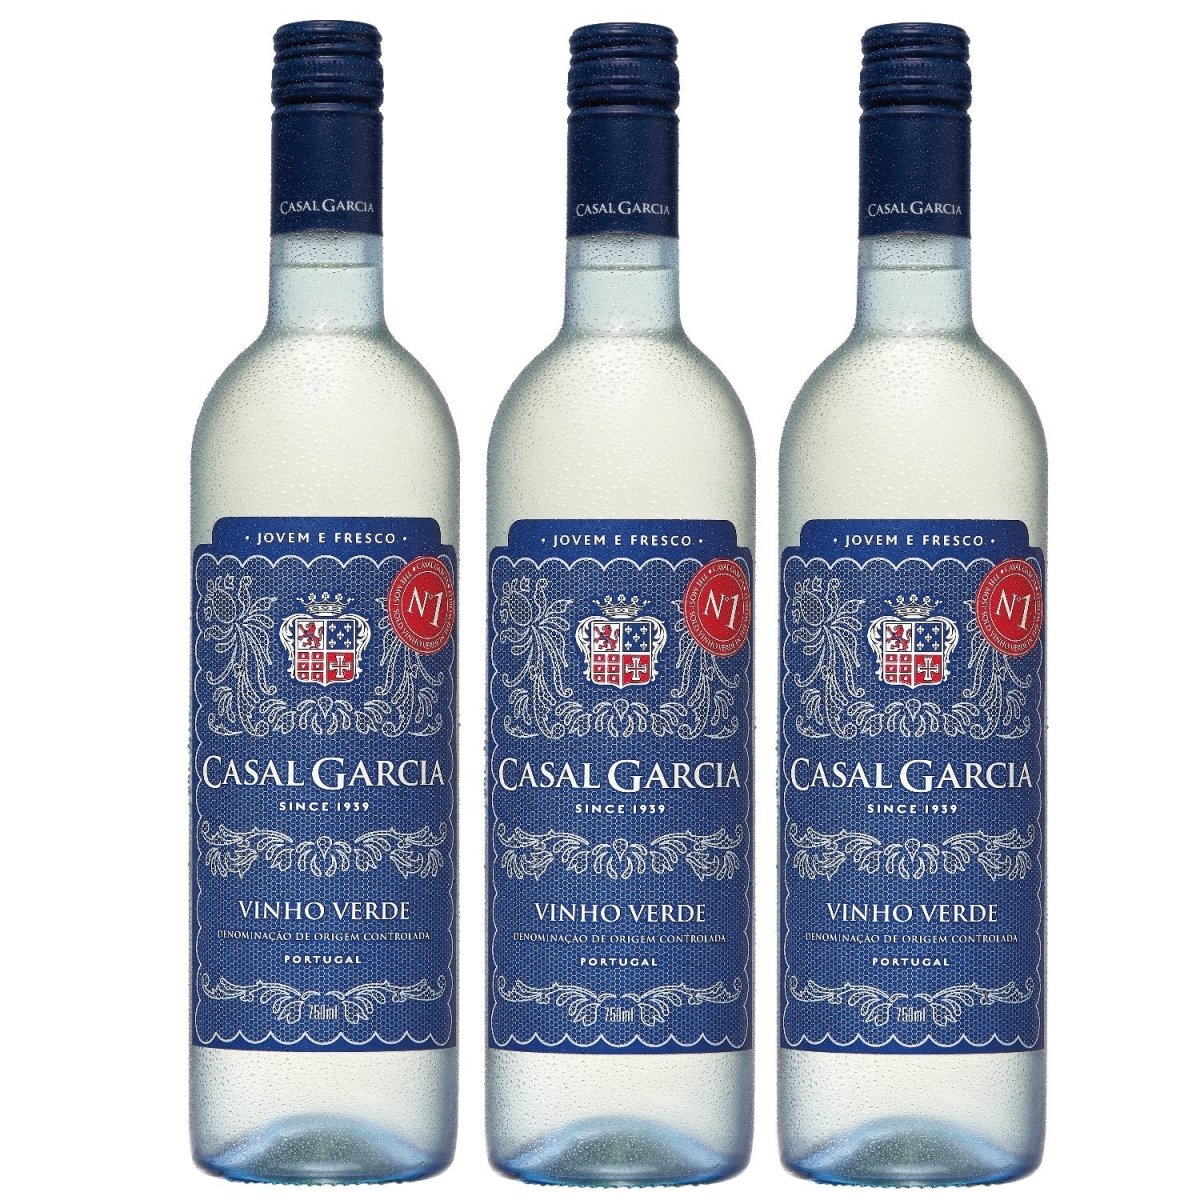 Casal Garcia Vinho Verde Quinta Da Aveleda Trajadura Weißwein Wein halbtrocken Portugal (3 x 0.75l) - Versanel -